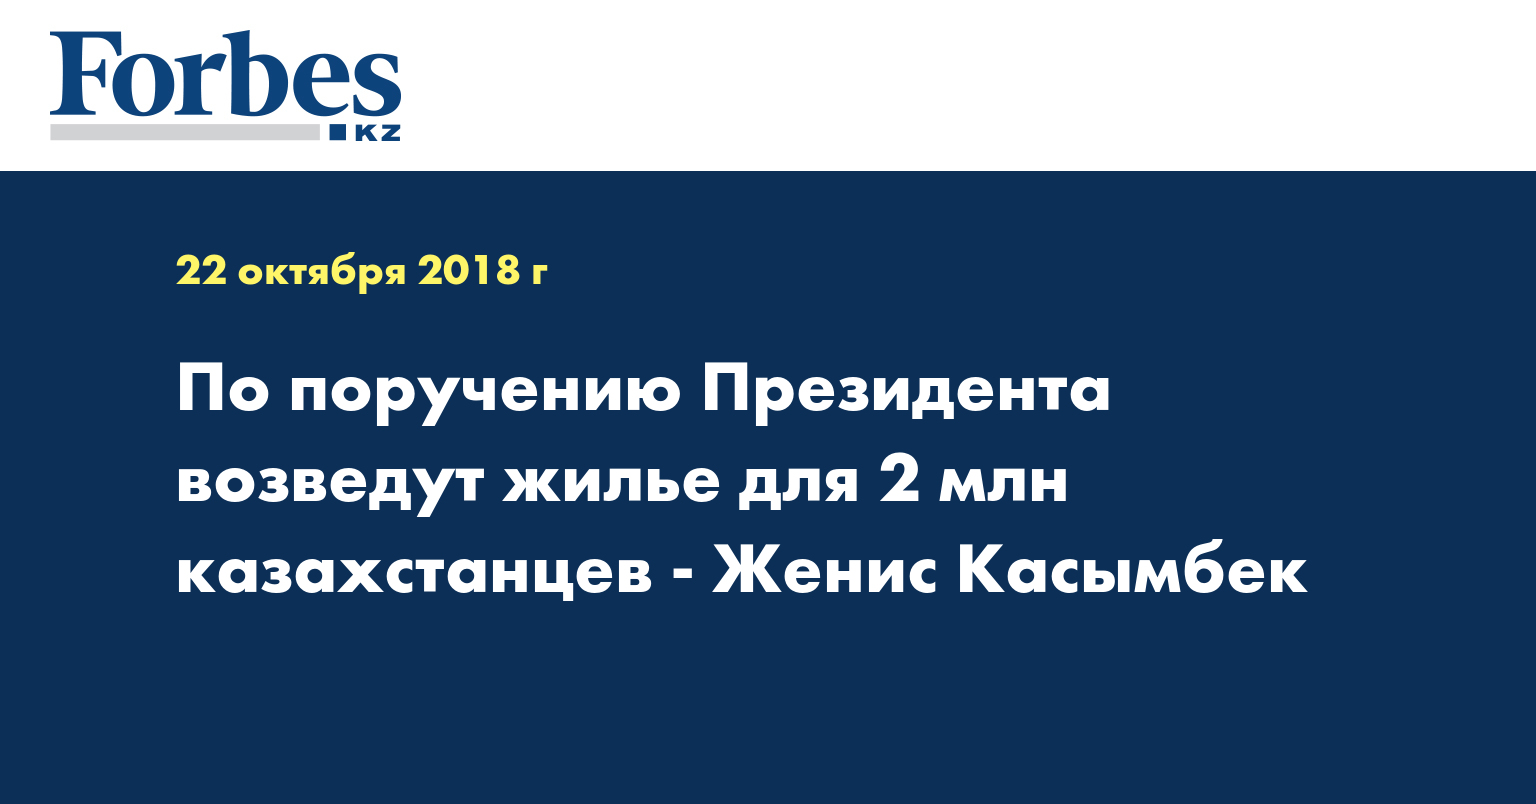 По поручению Президента возведут жилье для 2 млн казахстанцев - Женис Касымбек